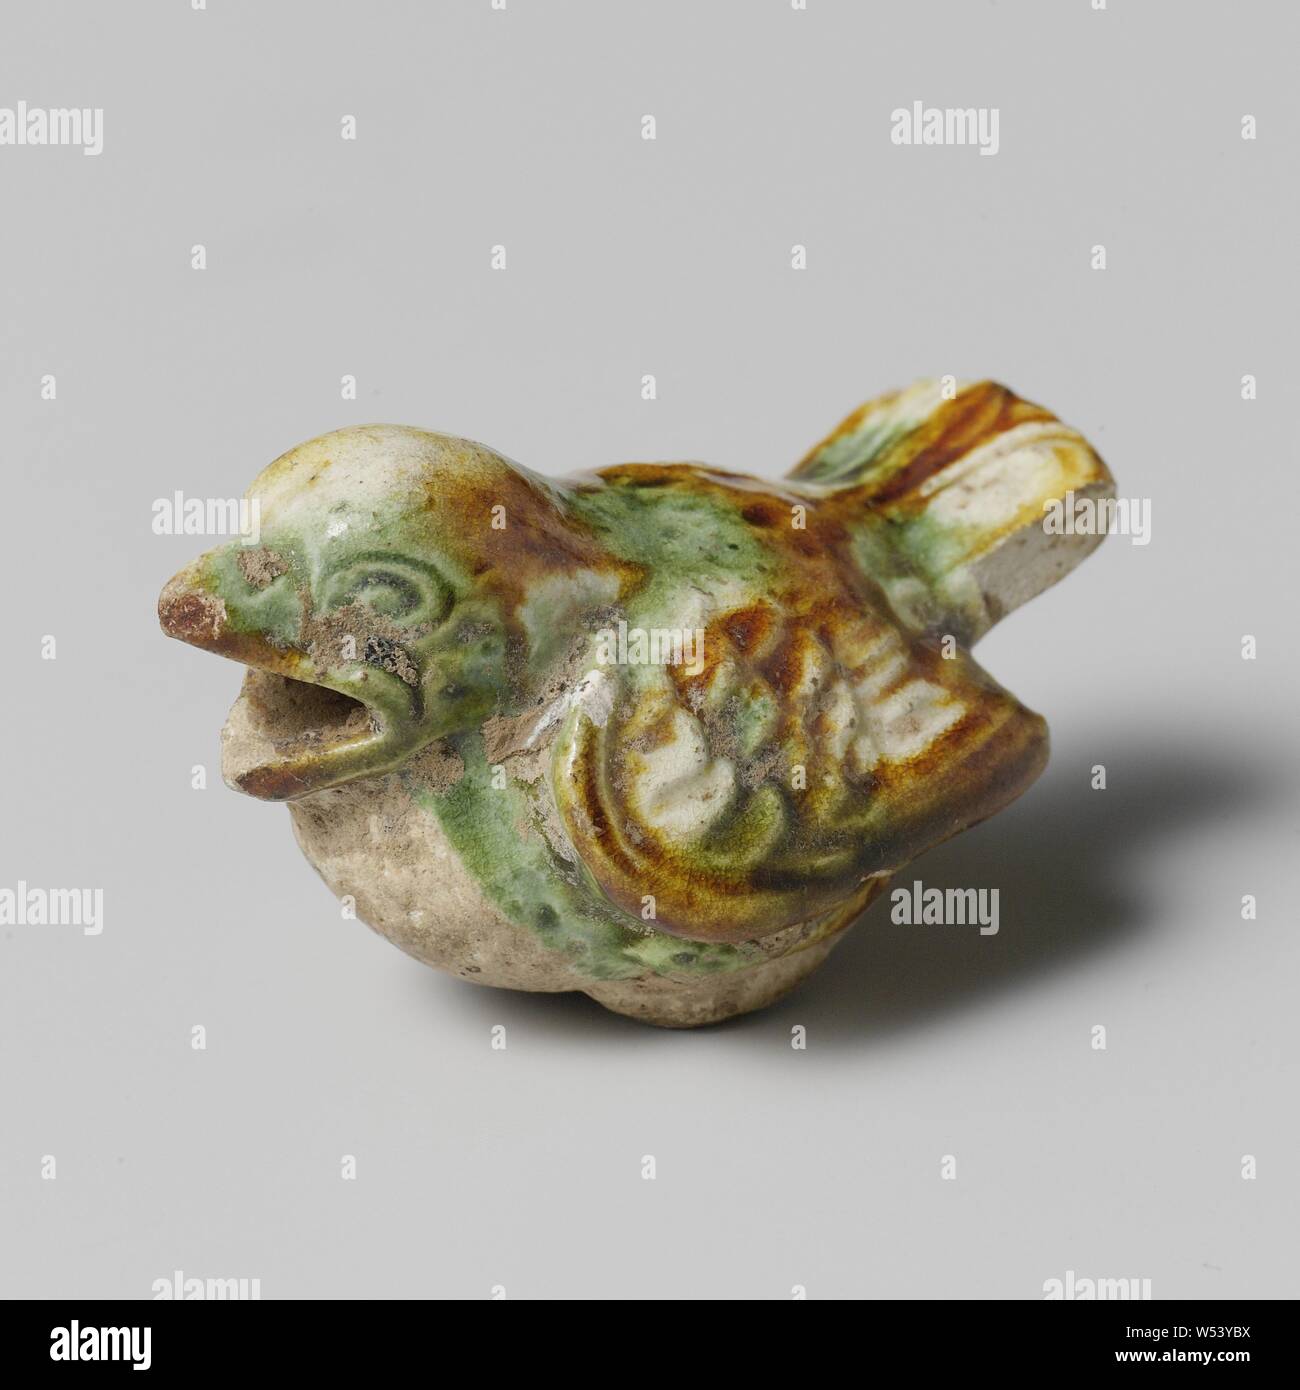 Abbildung eines Vogels und ein Topf mit Deckel Abbildung eines Vogels, Skulptur oder Abbildung von Steingut wie ein Vogel mit offenem Mund, mit einem cremefarbenen, braune und grüne Glasur bedeckt geprägt. Sancai, Tang., anonym, China, C. 700-C. 750, Tang-Dynastie (618-907), Steingut, Glasur, Verglasung, h 2,5 cm × 4,4 cm × w l 2,8 cm Stockfoto